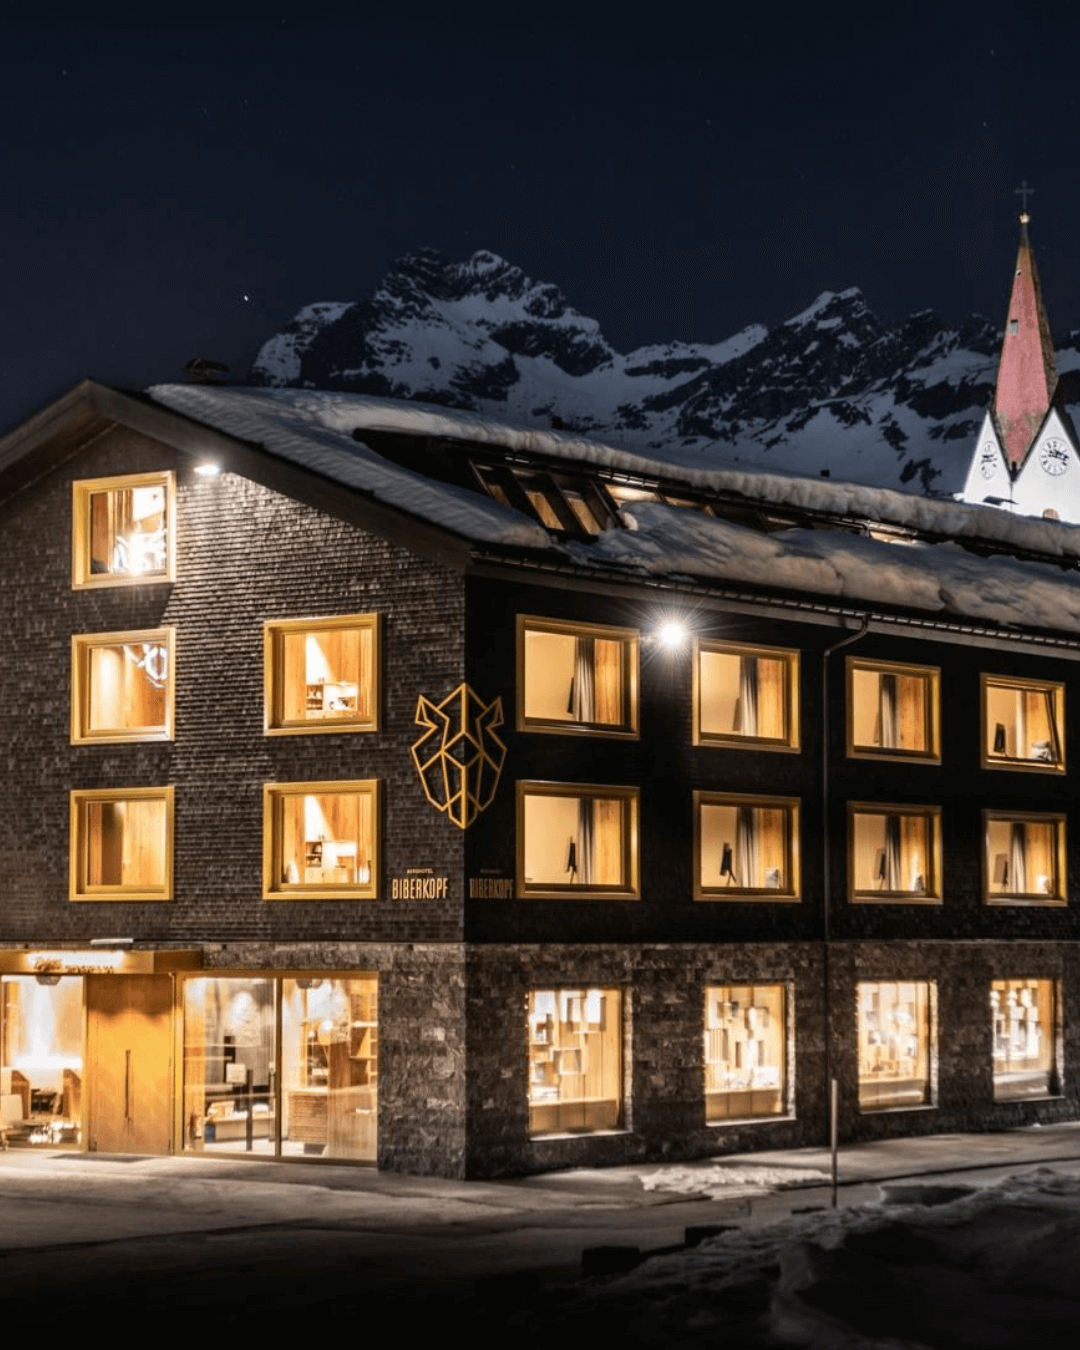 4. Ski Camp: Warth, Arlberg - April 2024